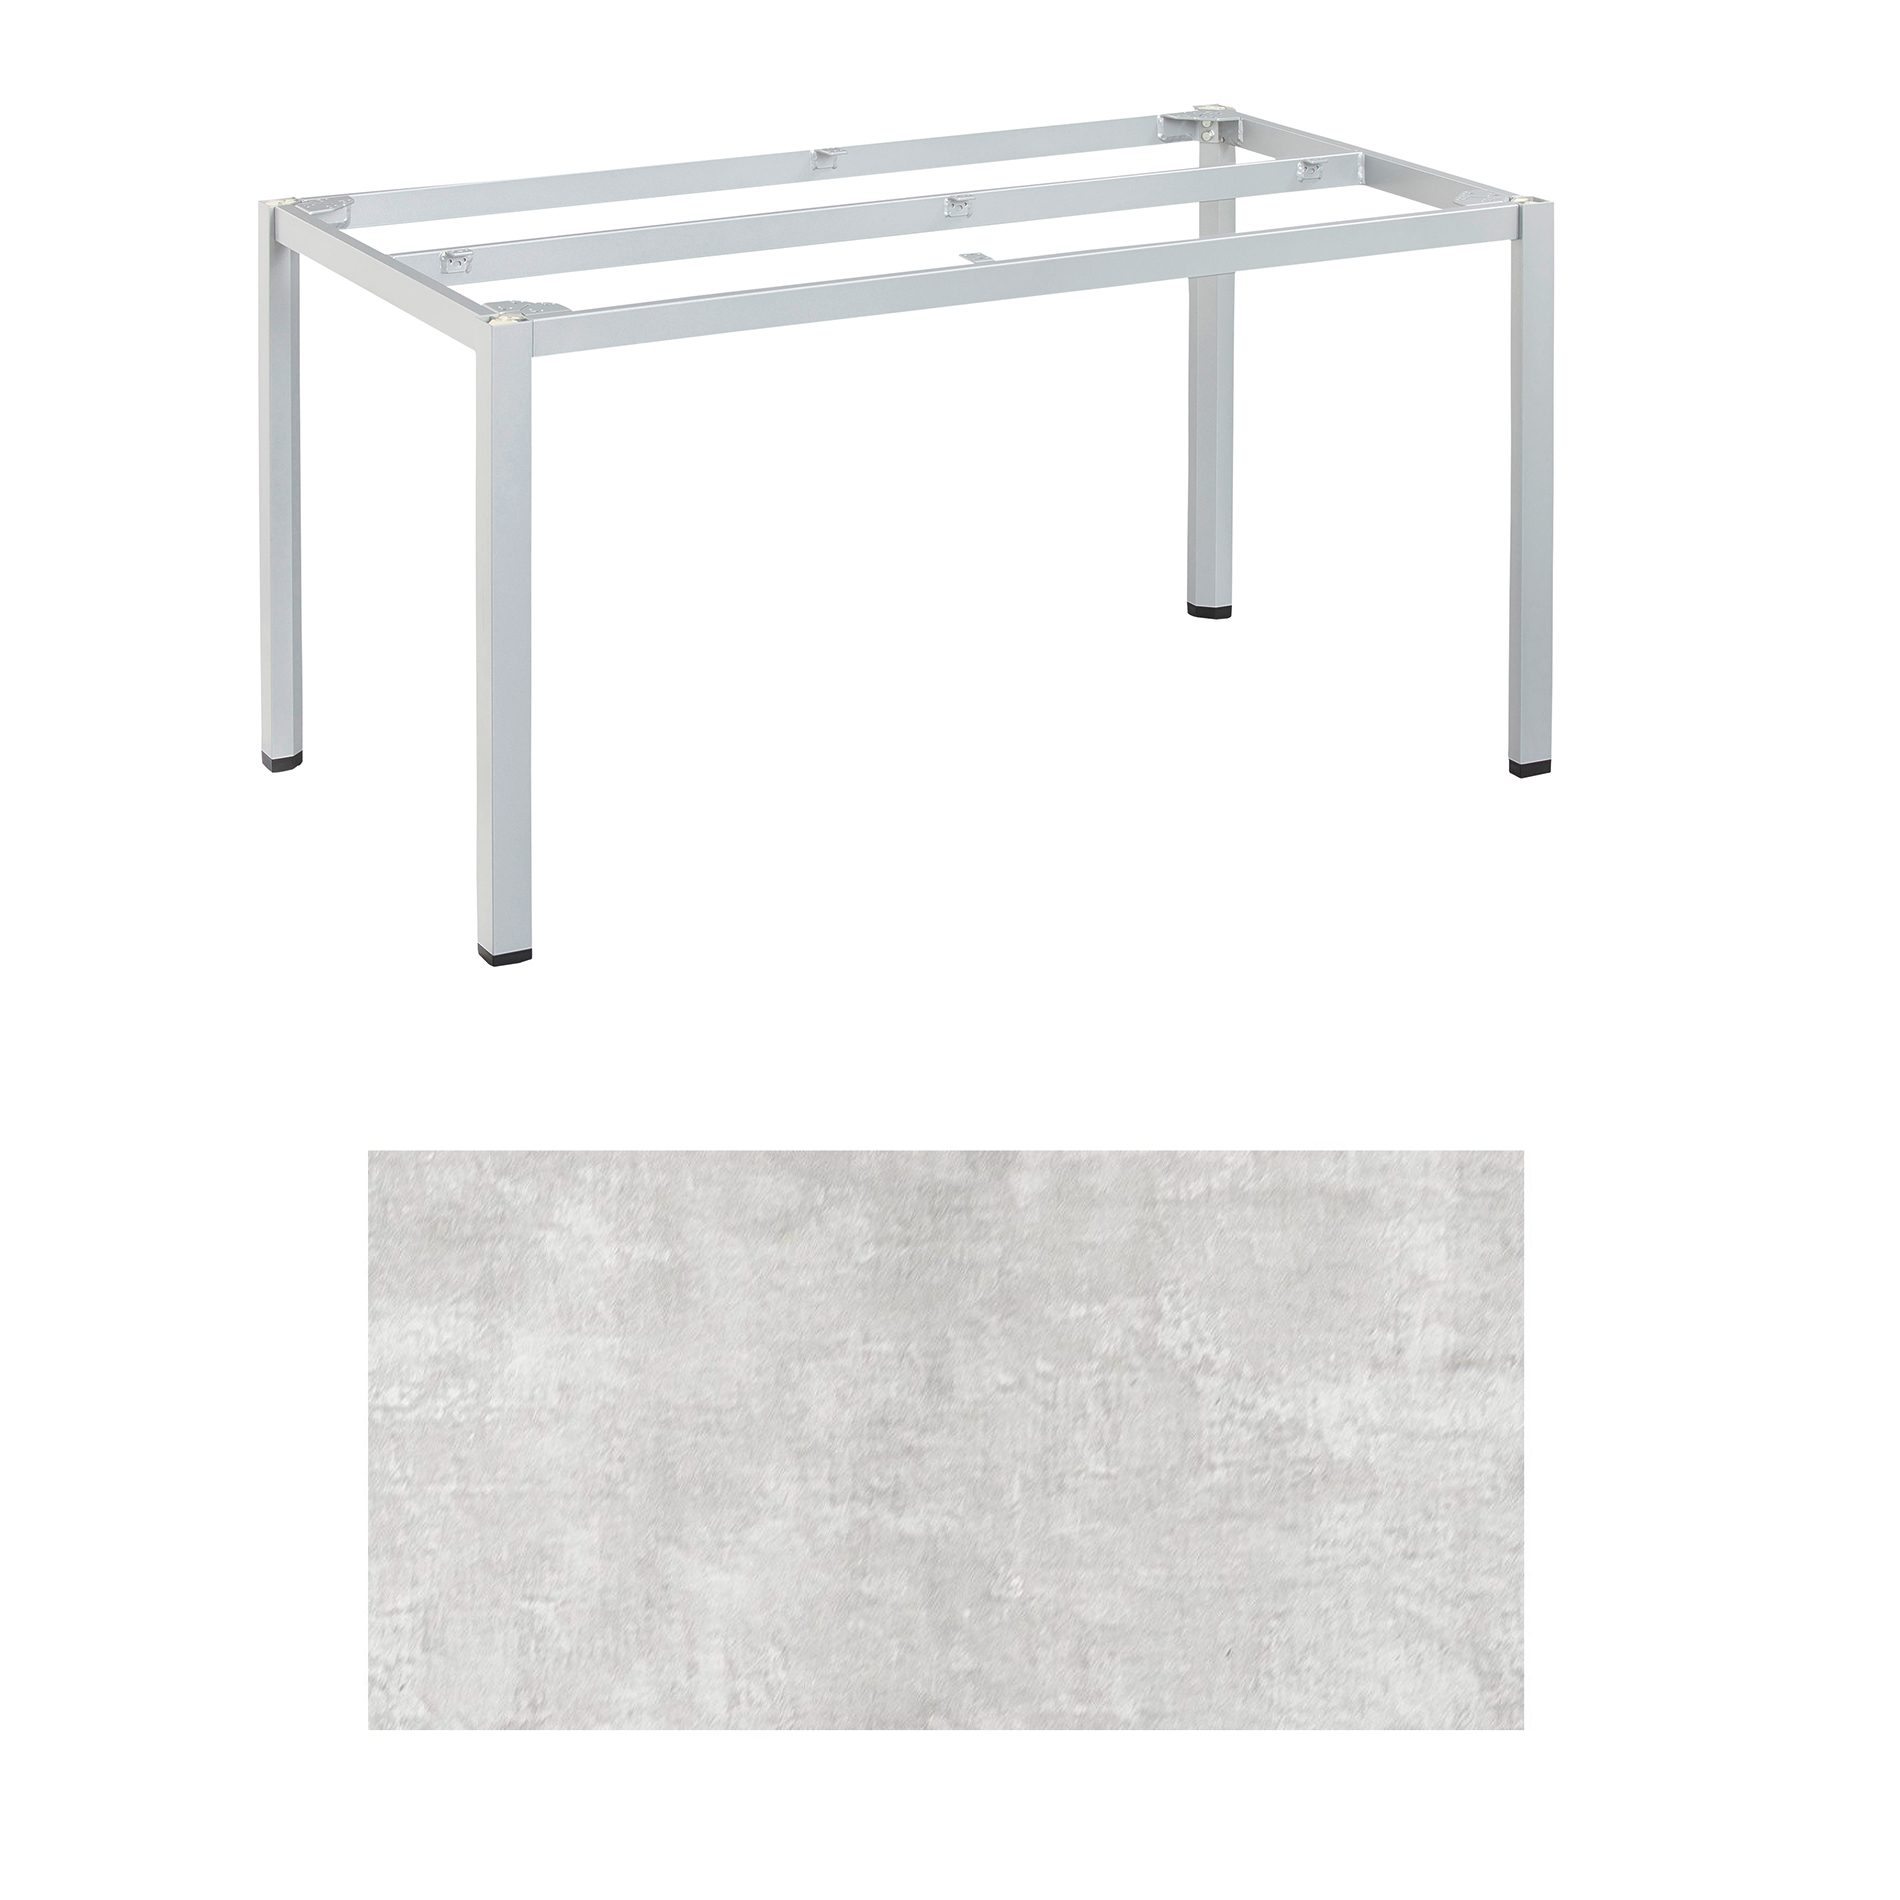 Kettler "Cubic" Tischgestell 140x70 cm, Aluminium silber mit HPL-Platte hellgrau meliert